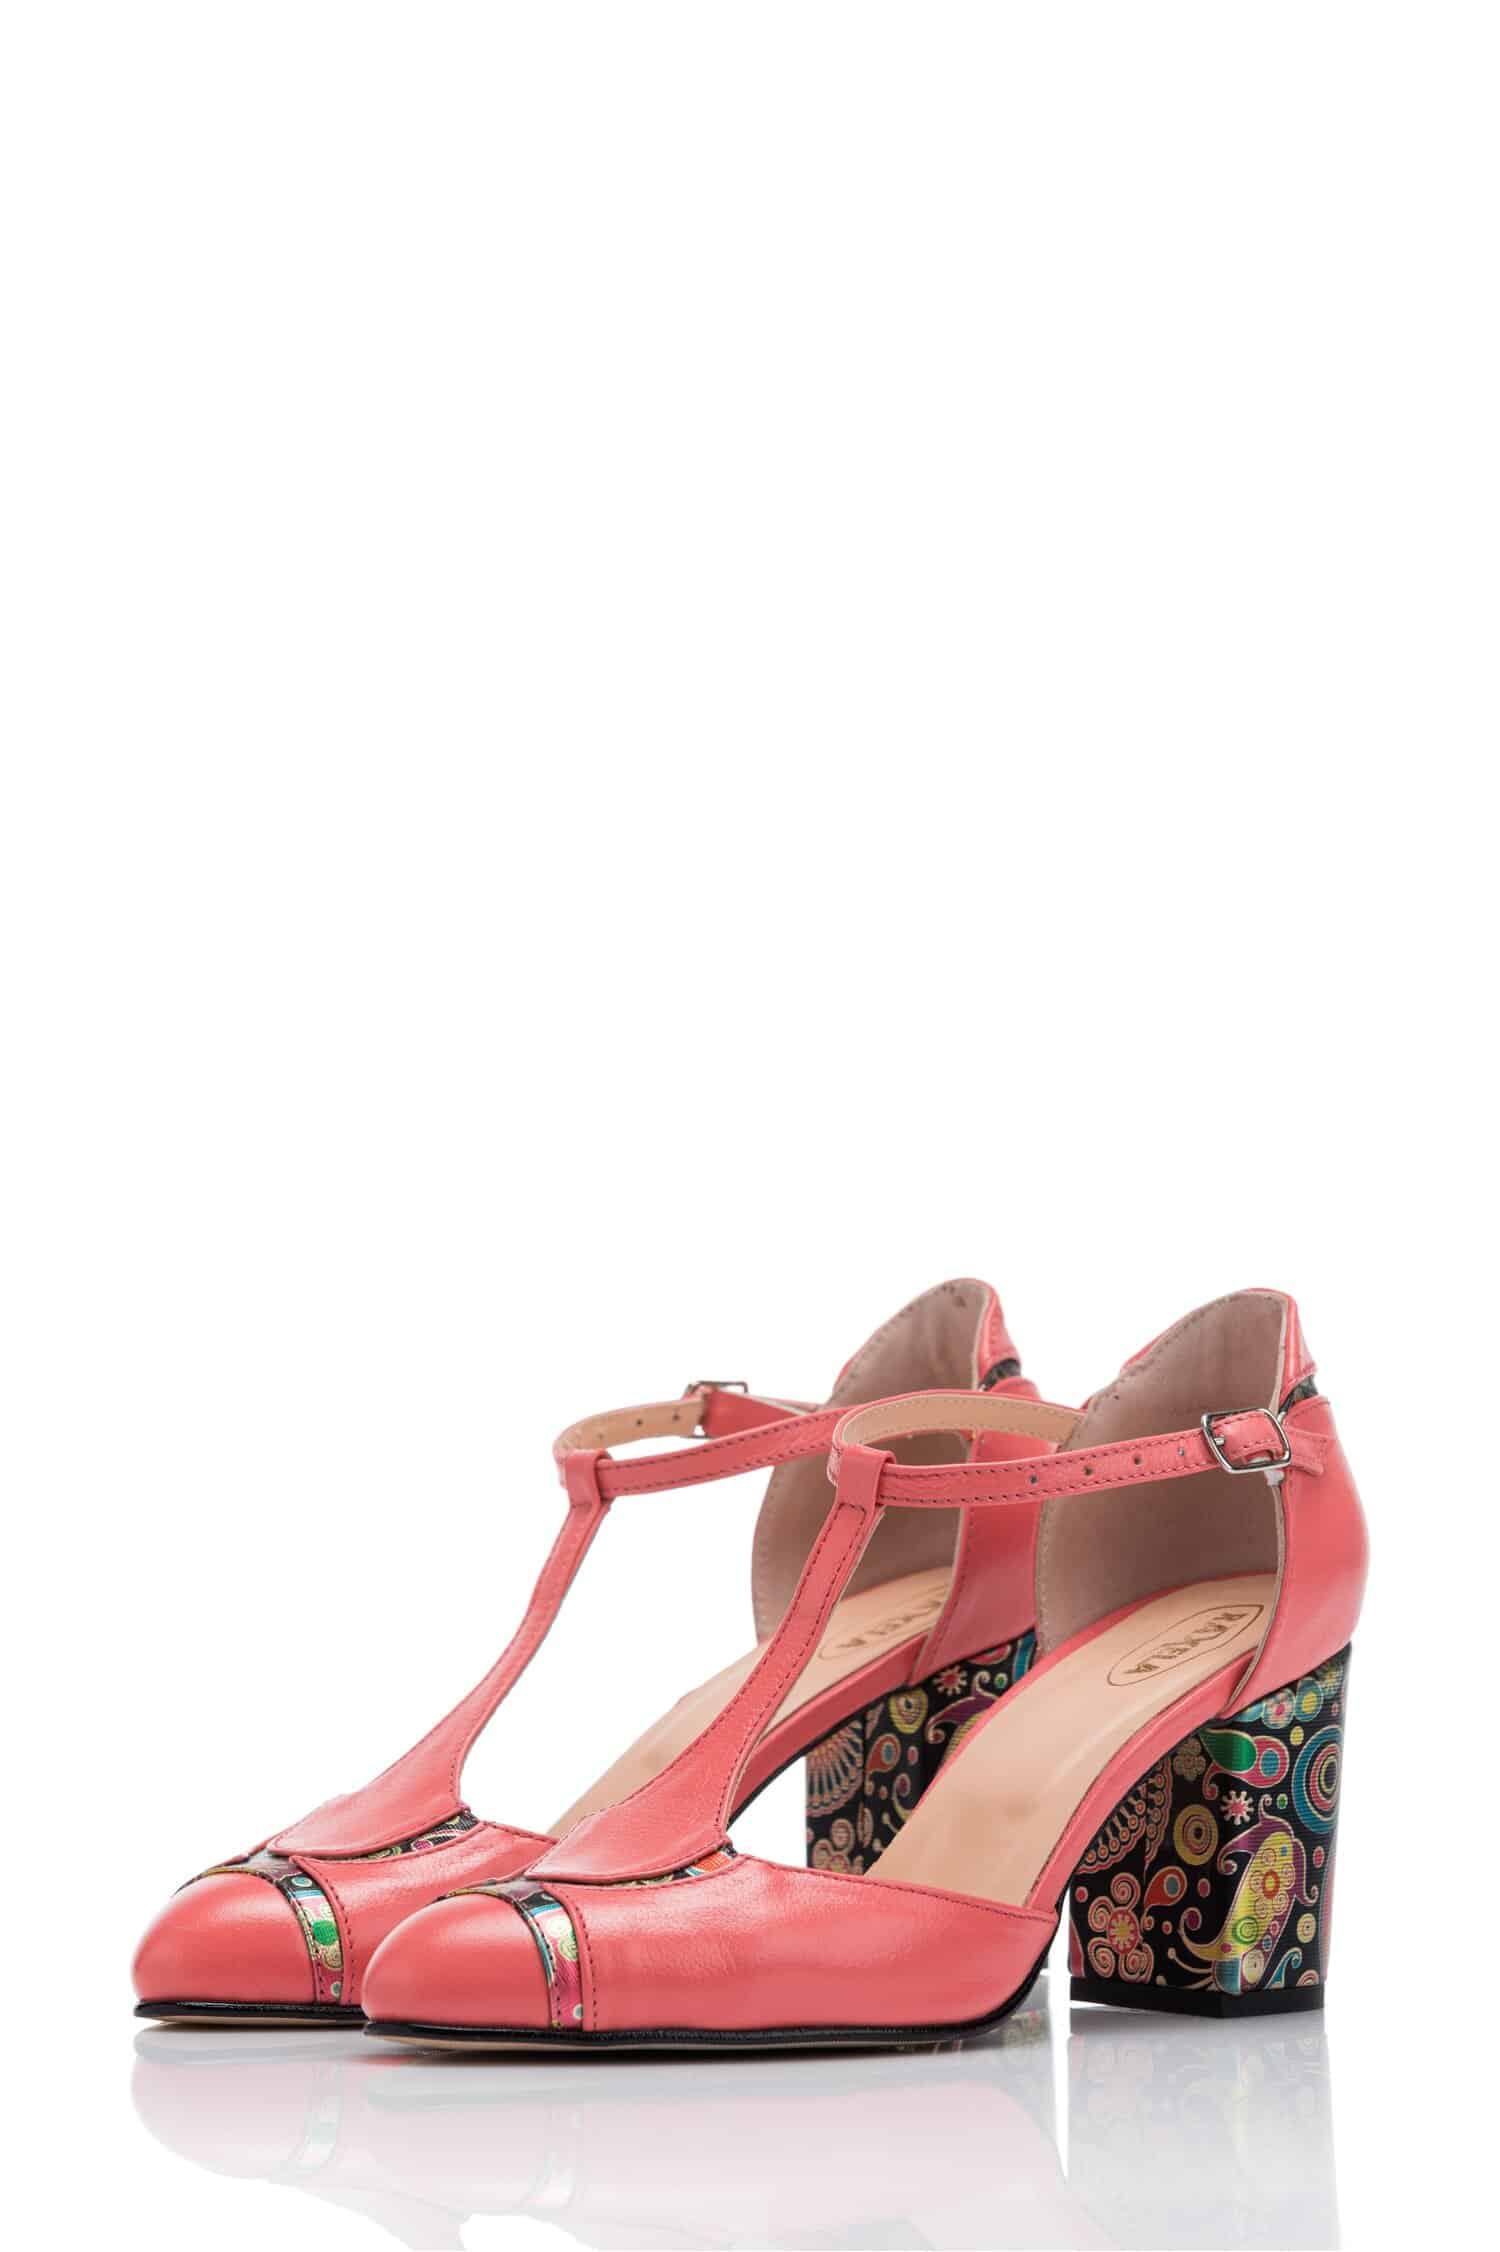 Pantofi Cesia roz cu imprimeu multicolor pe toc si varf